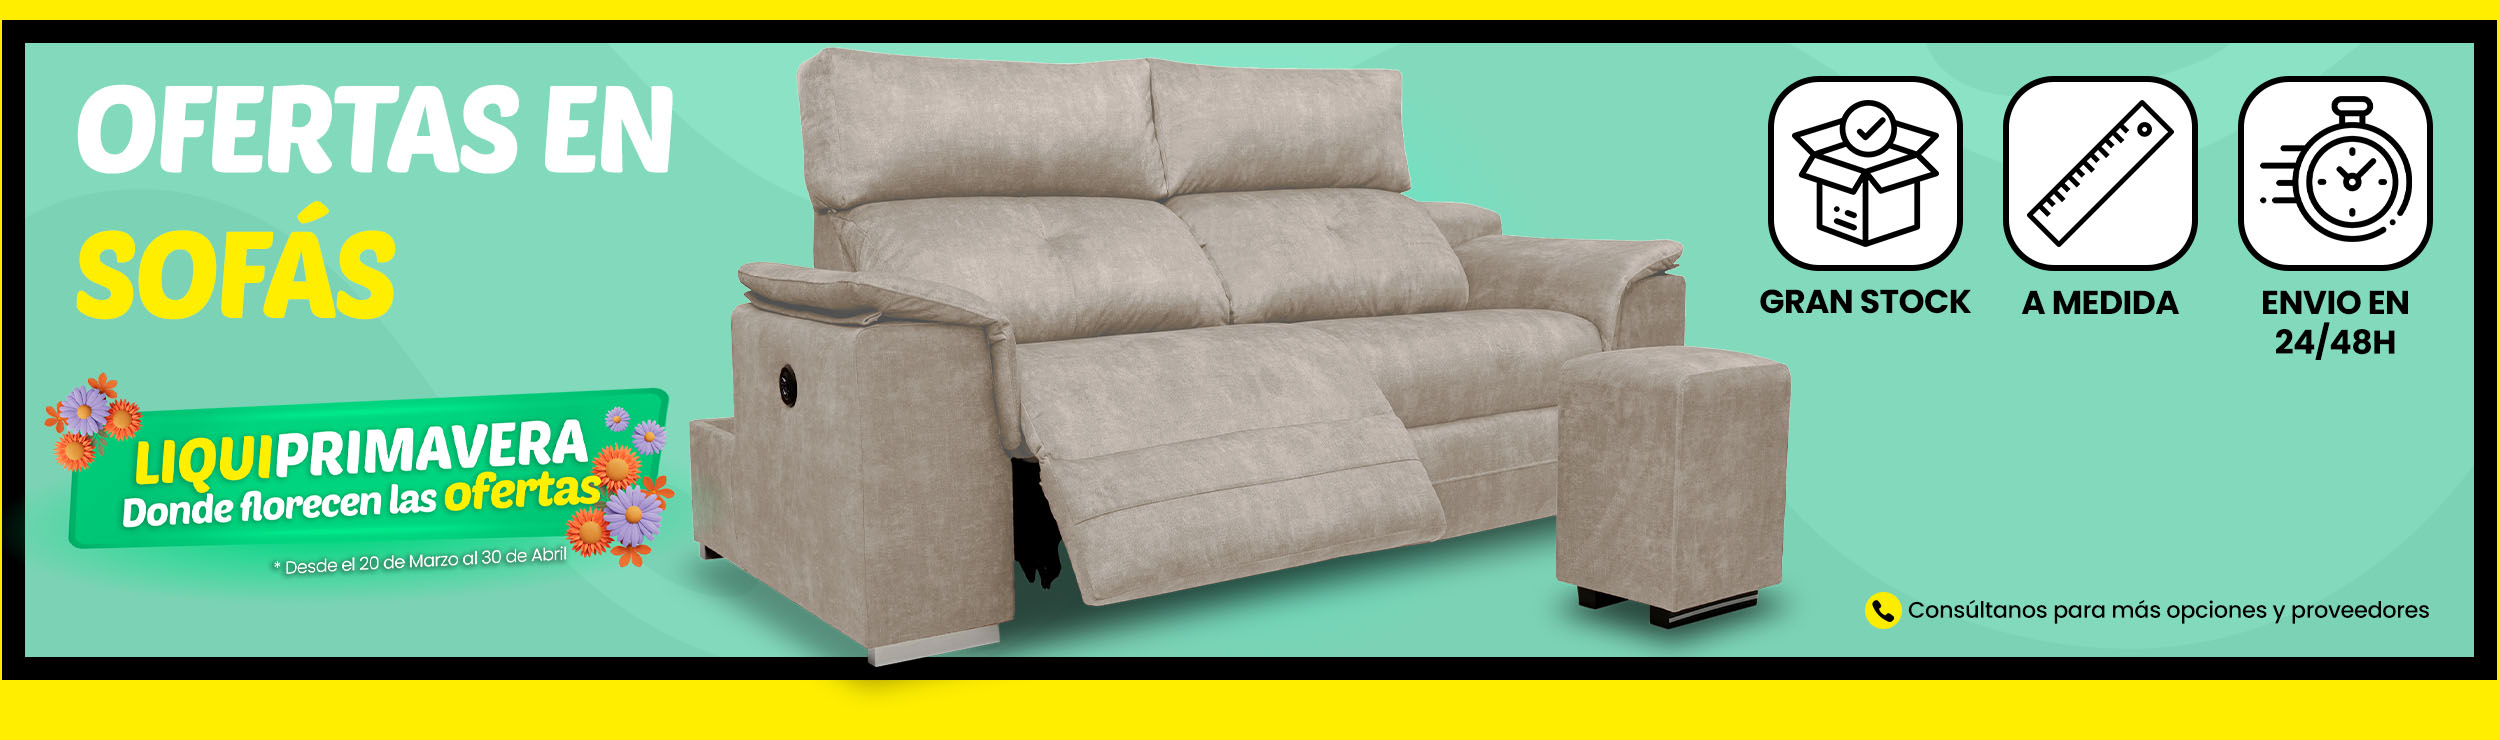 sofa-3pl-fijo-oferta